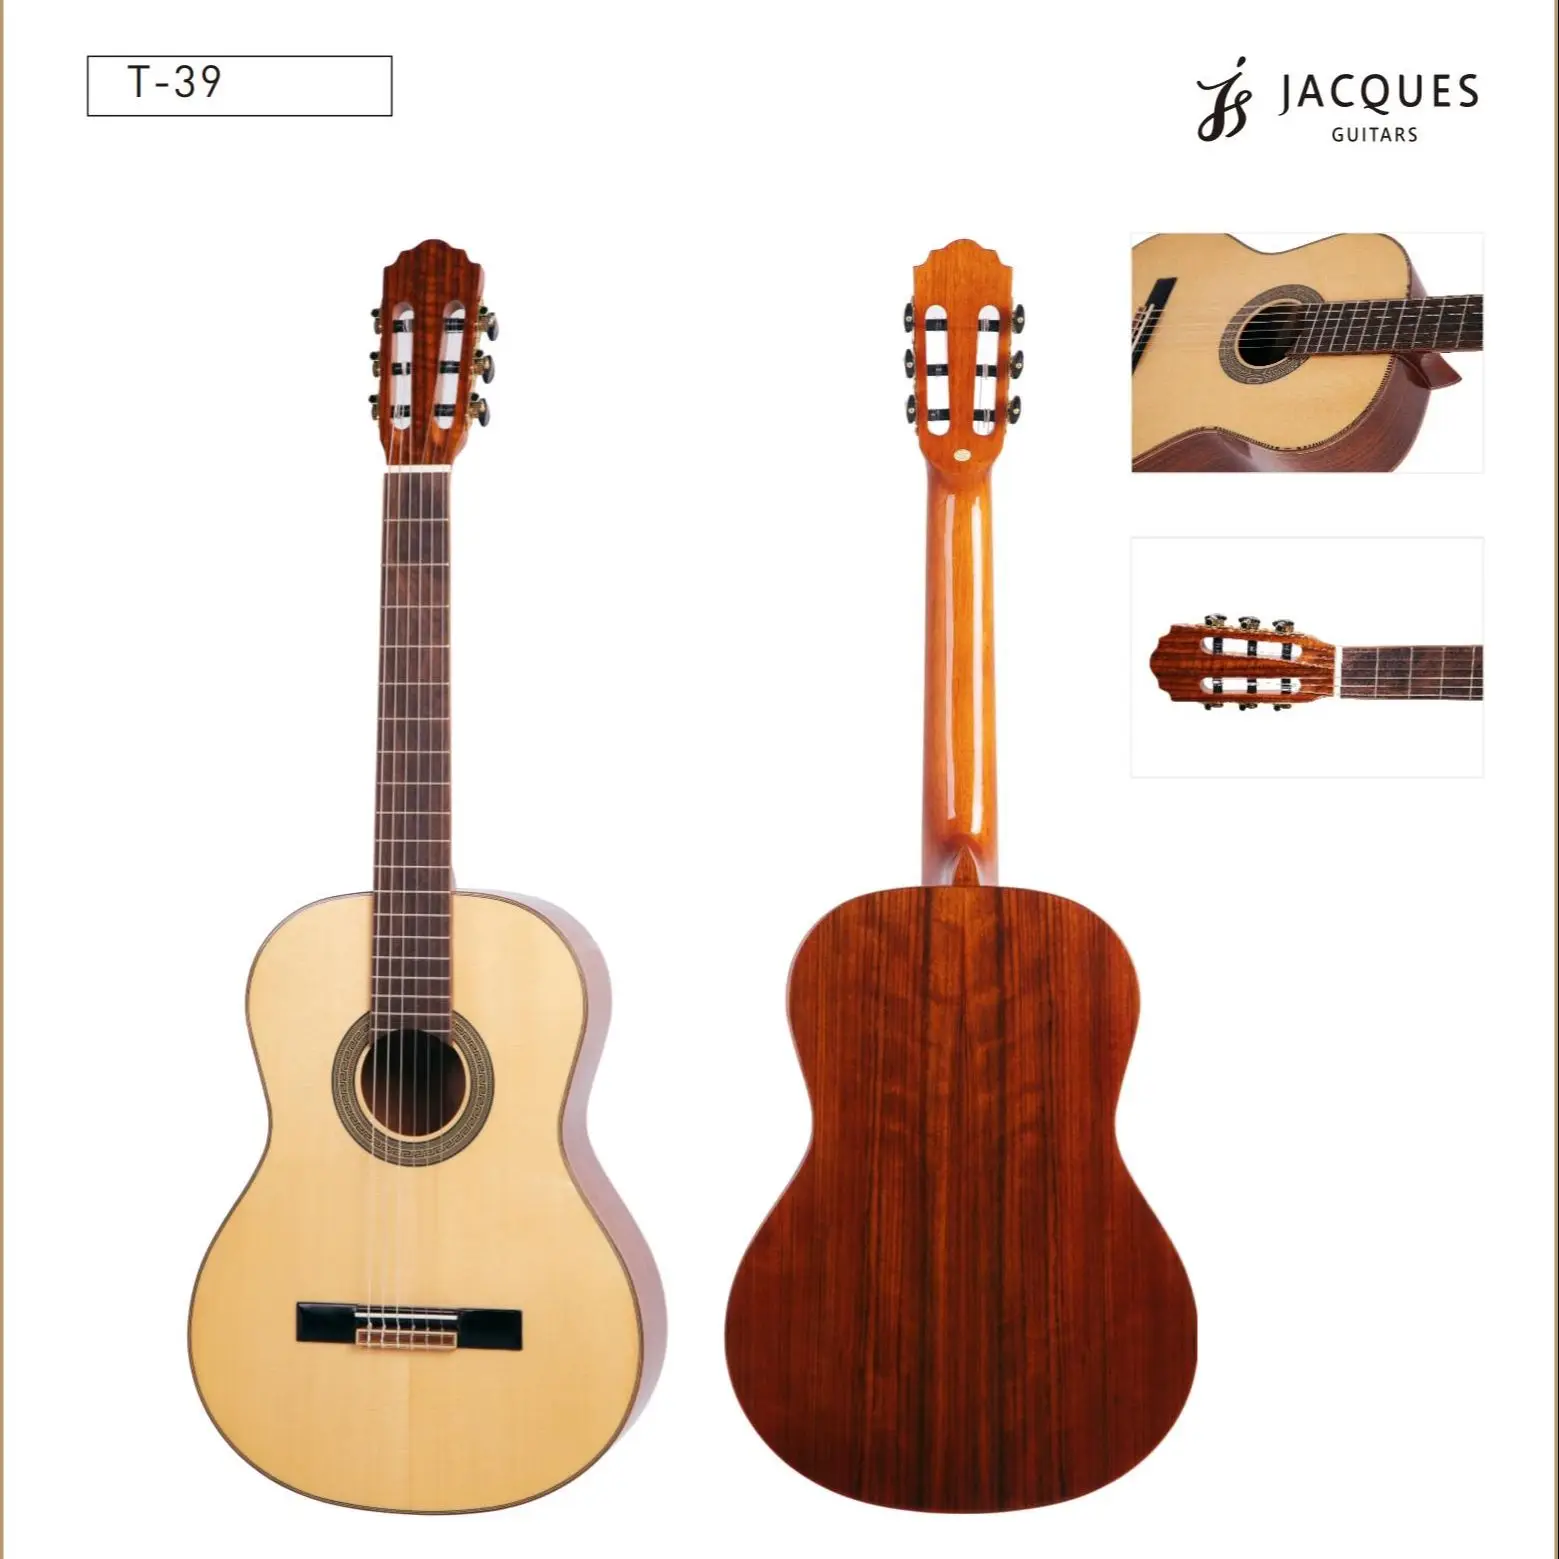 

Акустическая гитара, высокое качество, твердая древесина, для начинающих, для взрослых, 39 дюймов, удобная, приятная на ощупь, настраиваемая, прочная Классическая искусственная гитара